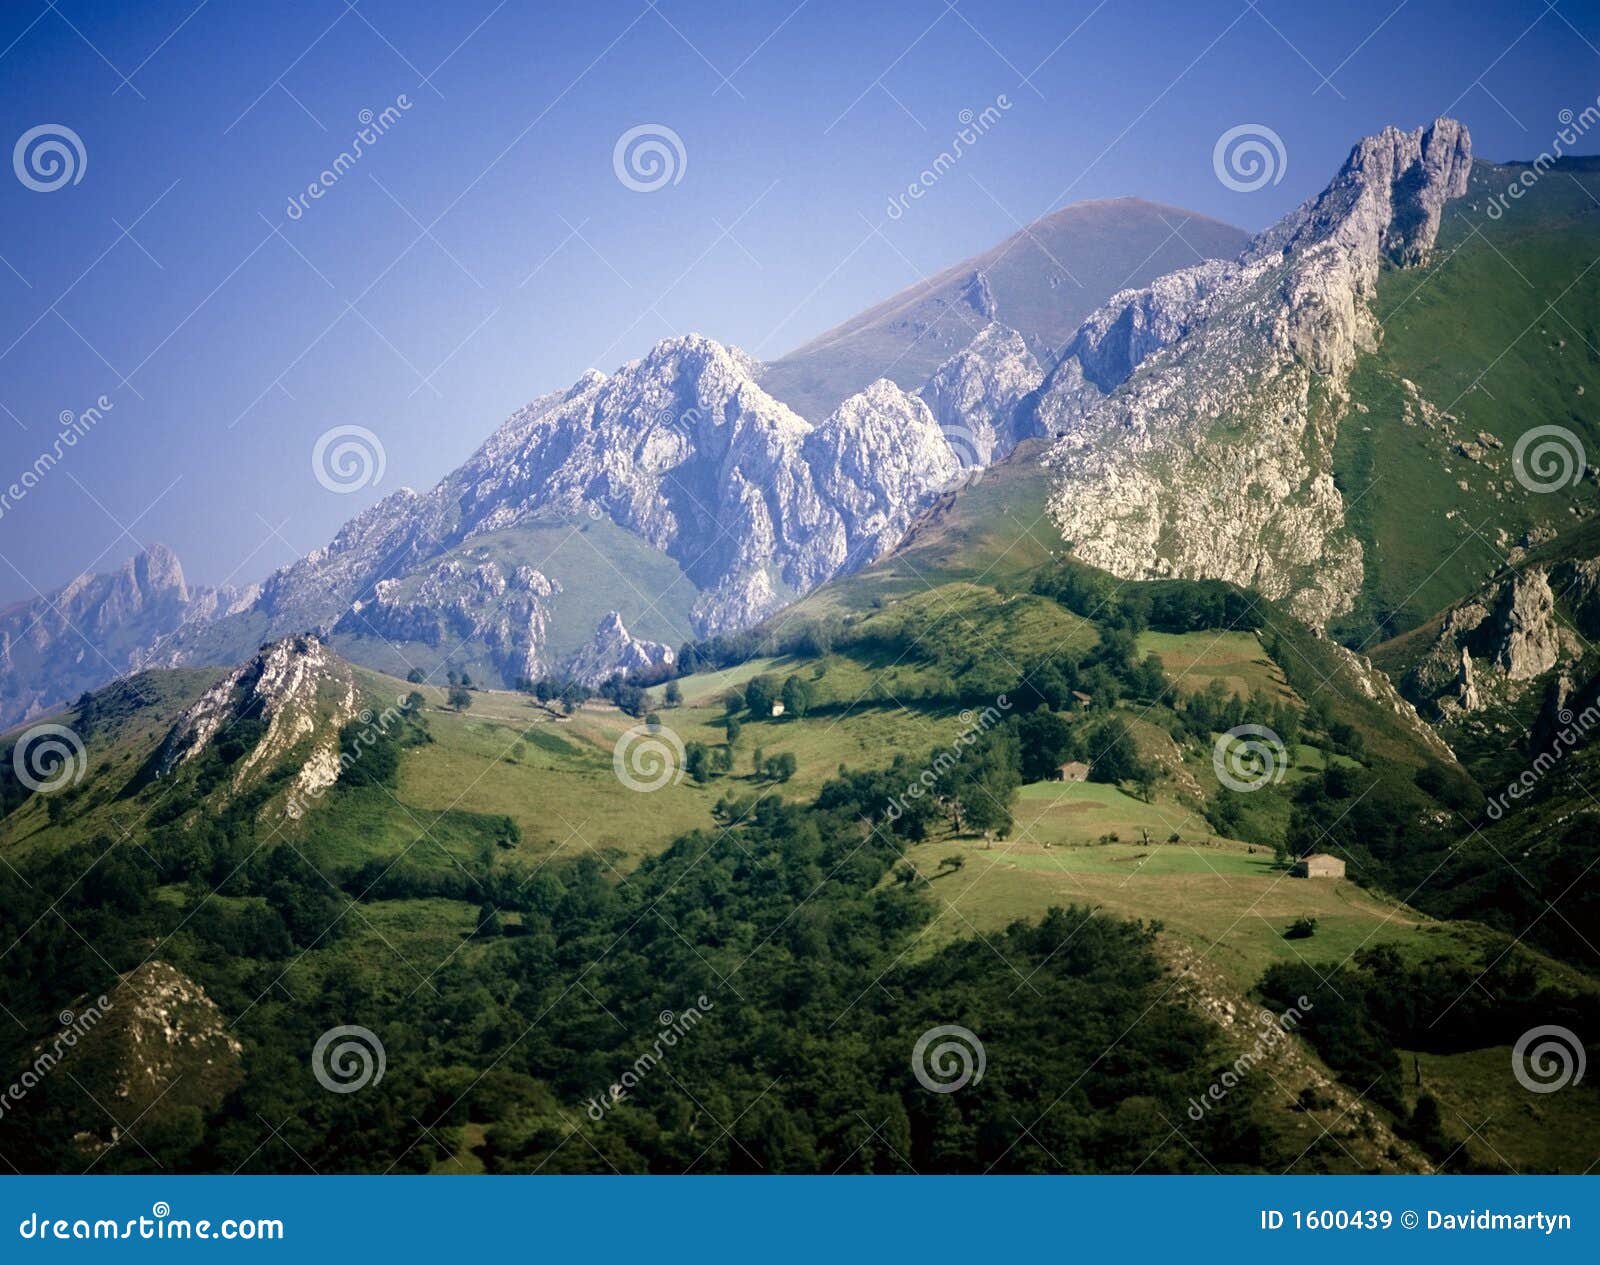 picos de europa mountains